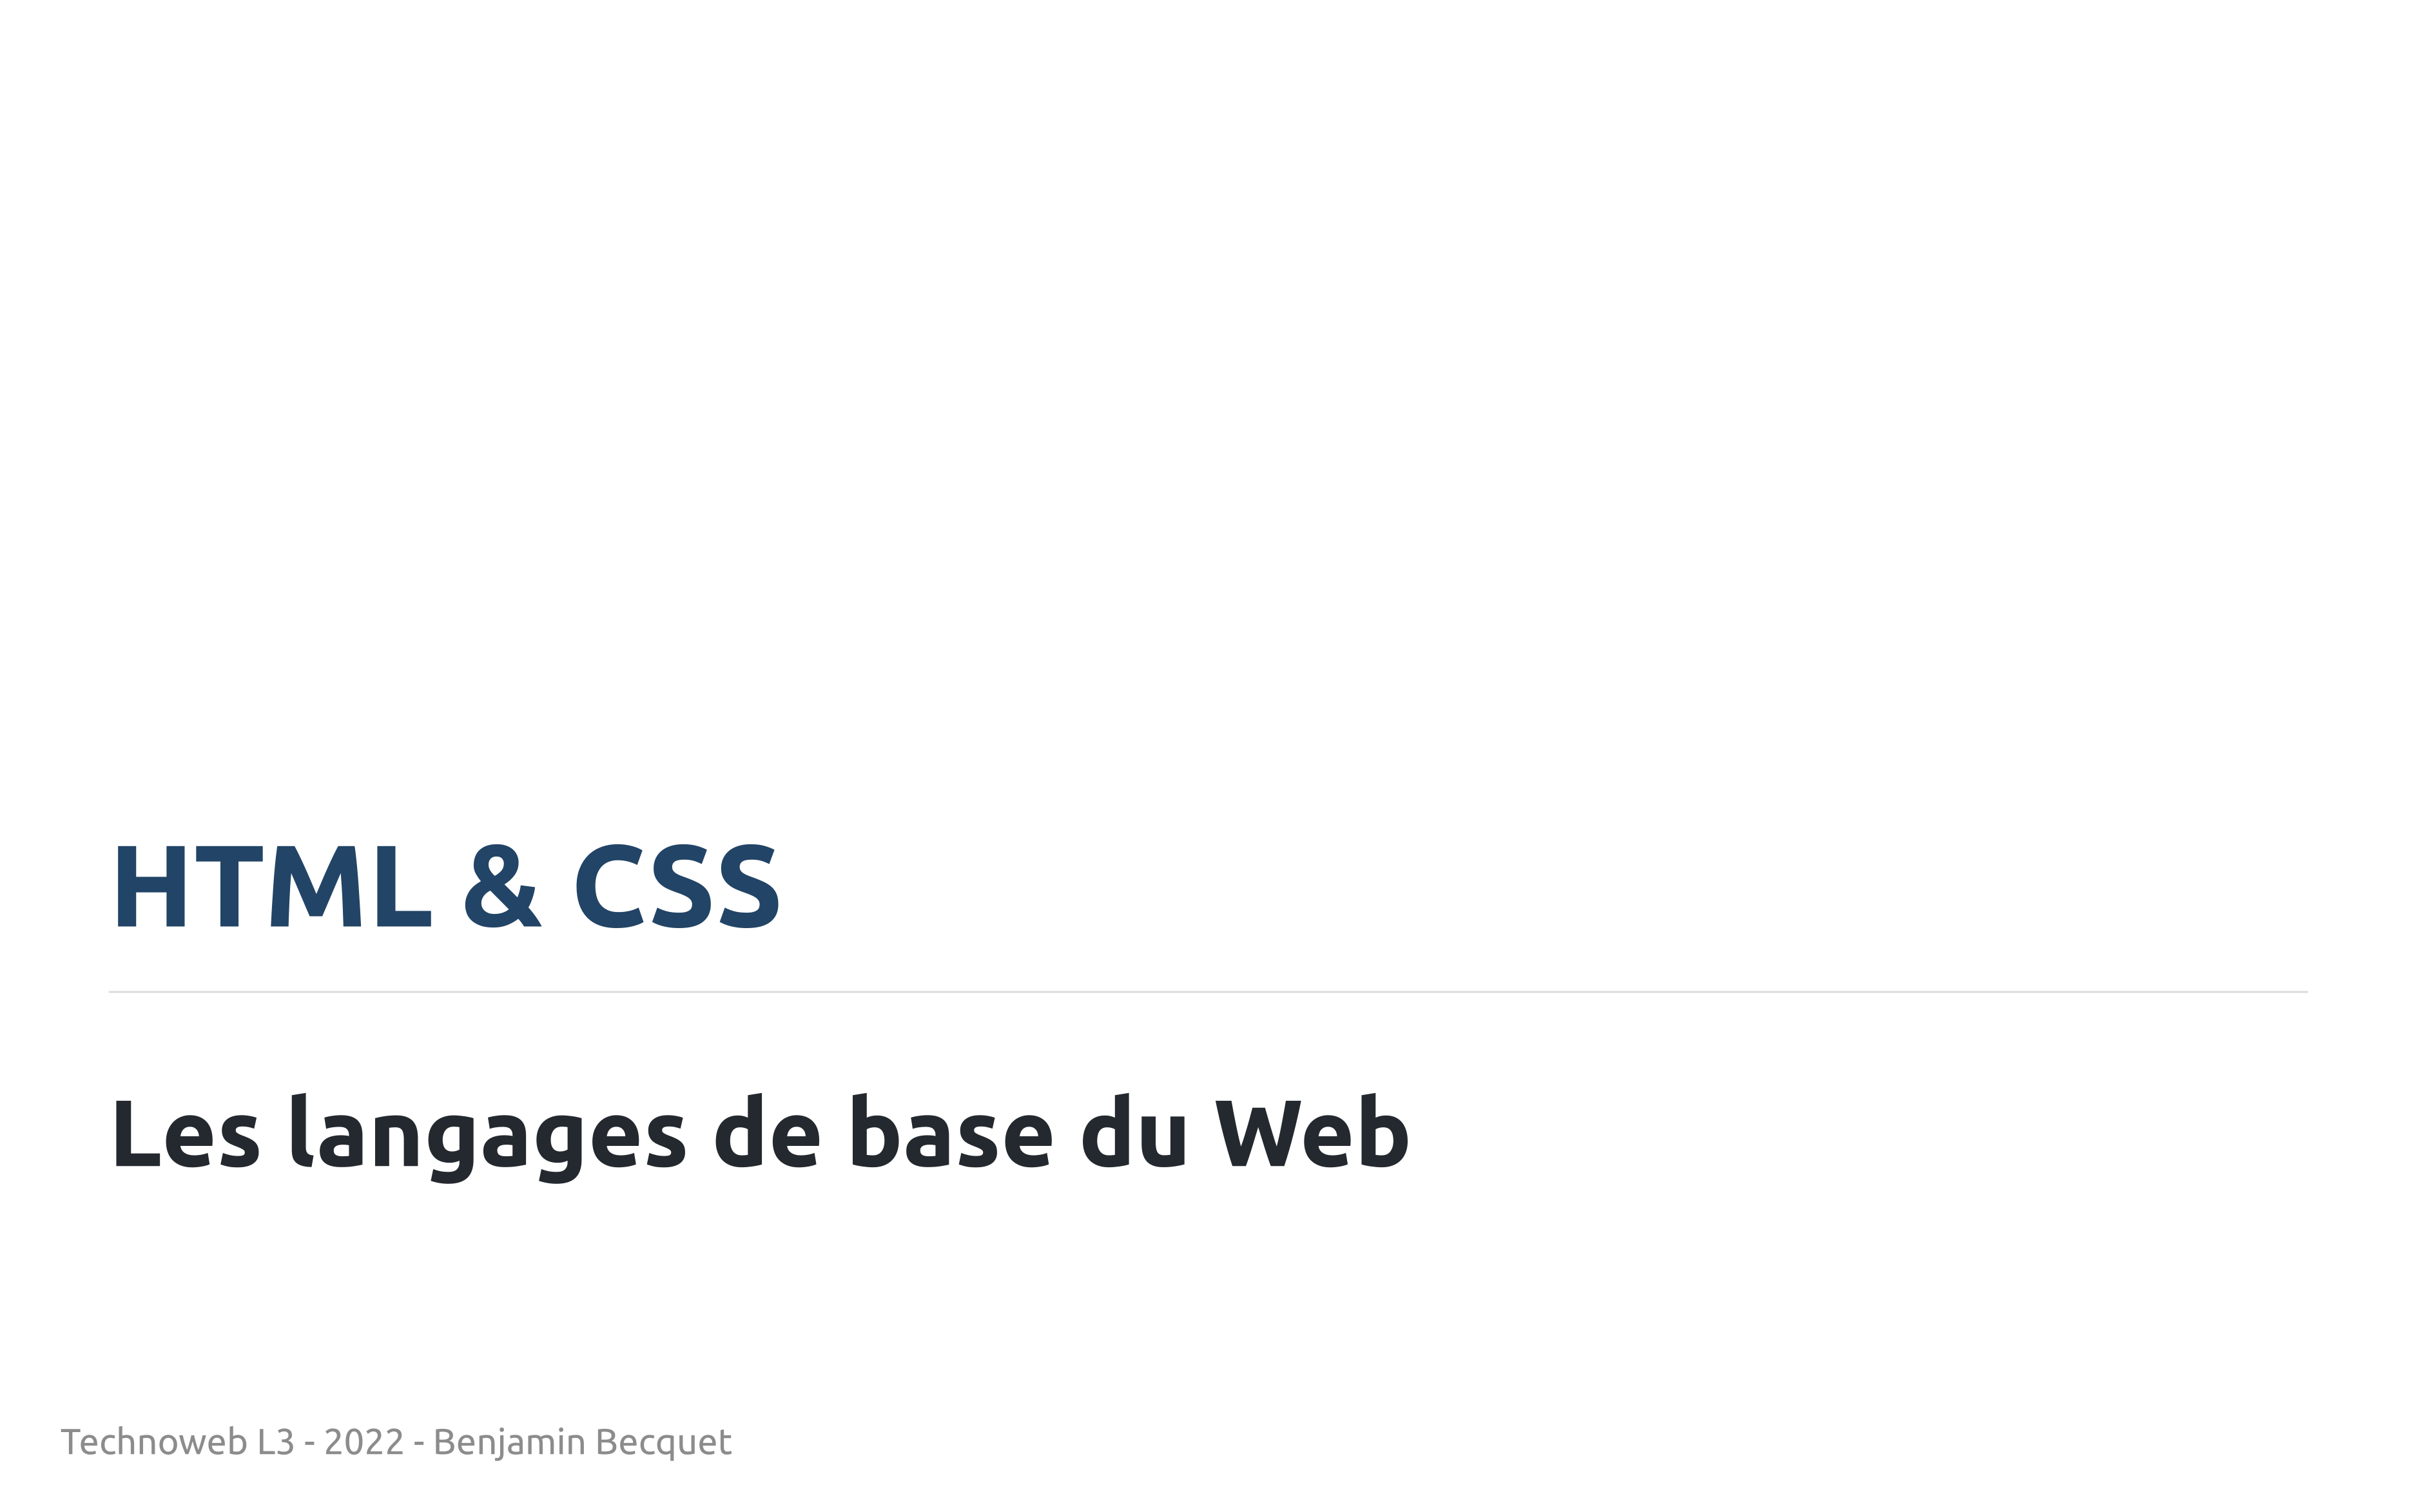 Aperçu des slides du cours 'HTML et CSS'